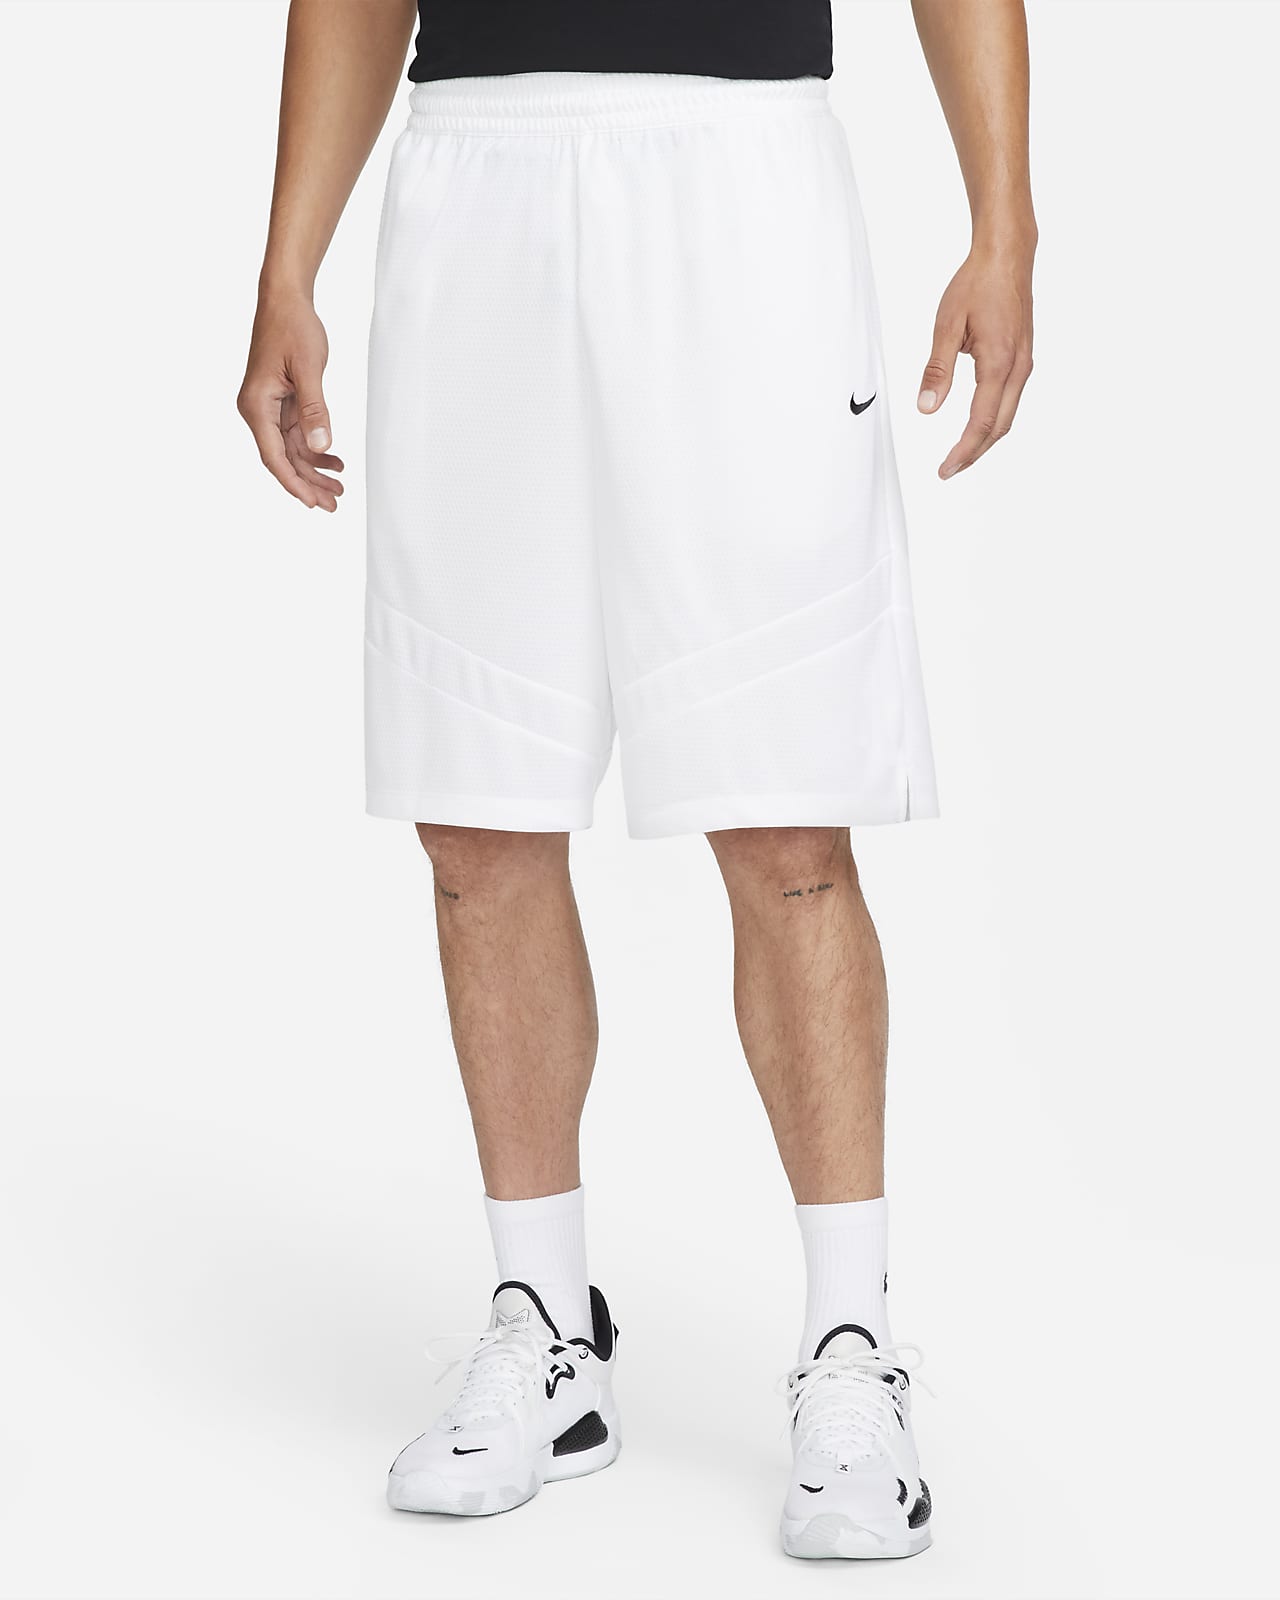 Ανδρικό σορτς μπάσκετ Dri-FIT Nike Icon 28 cm